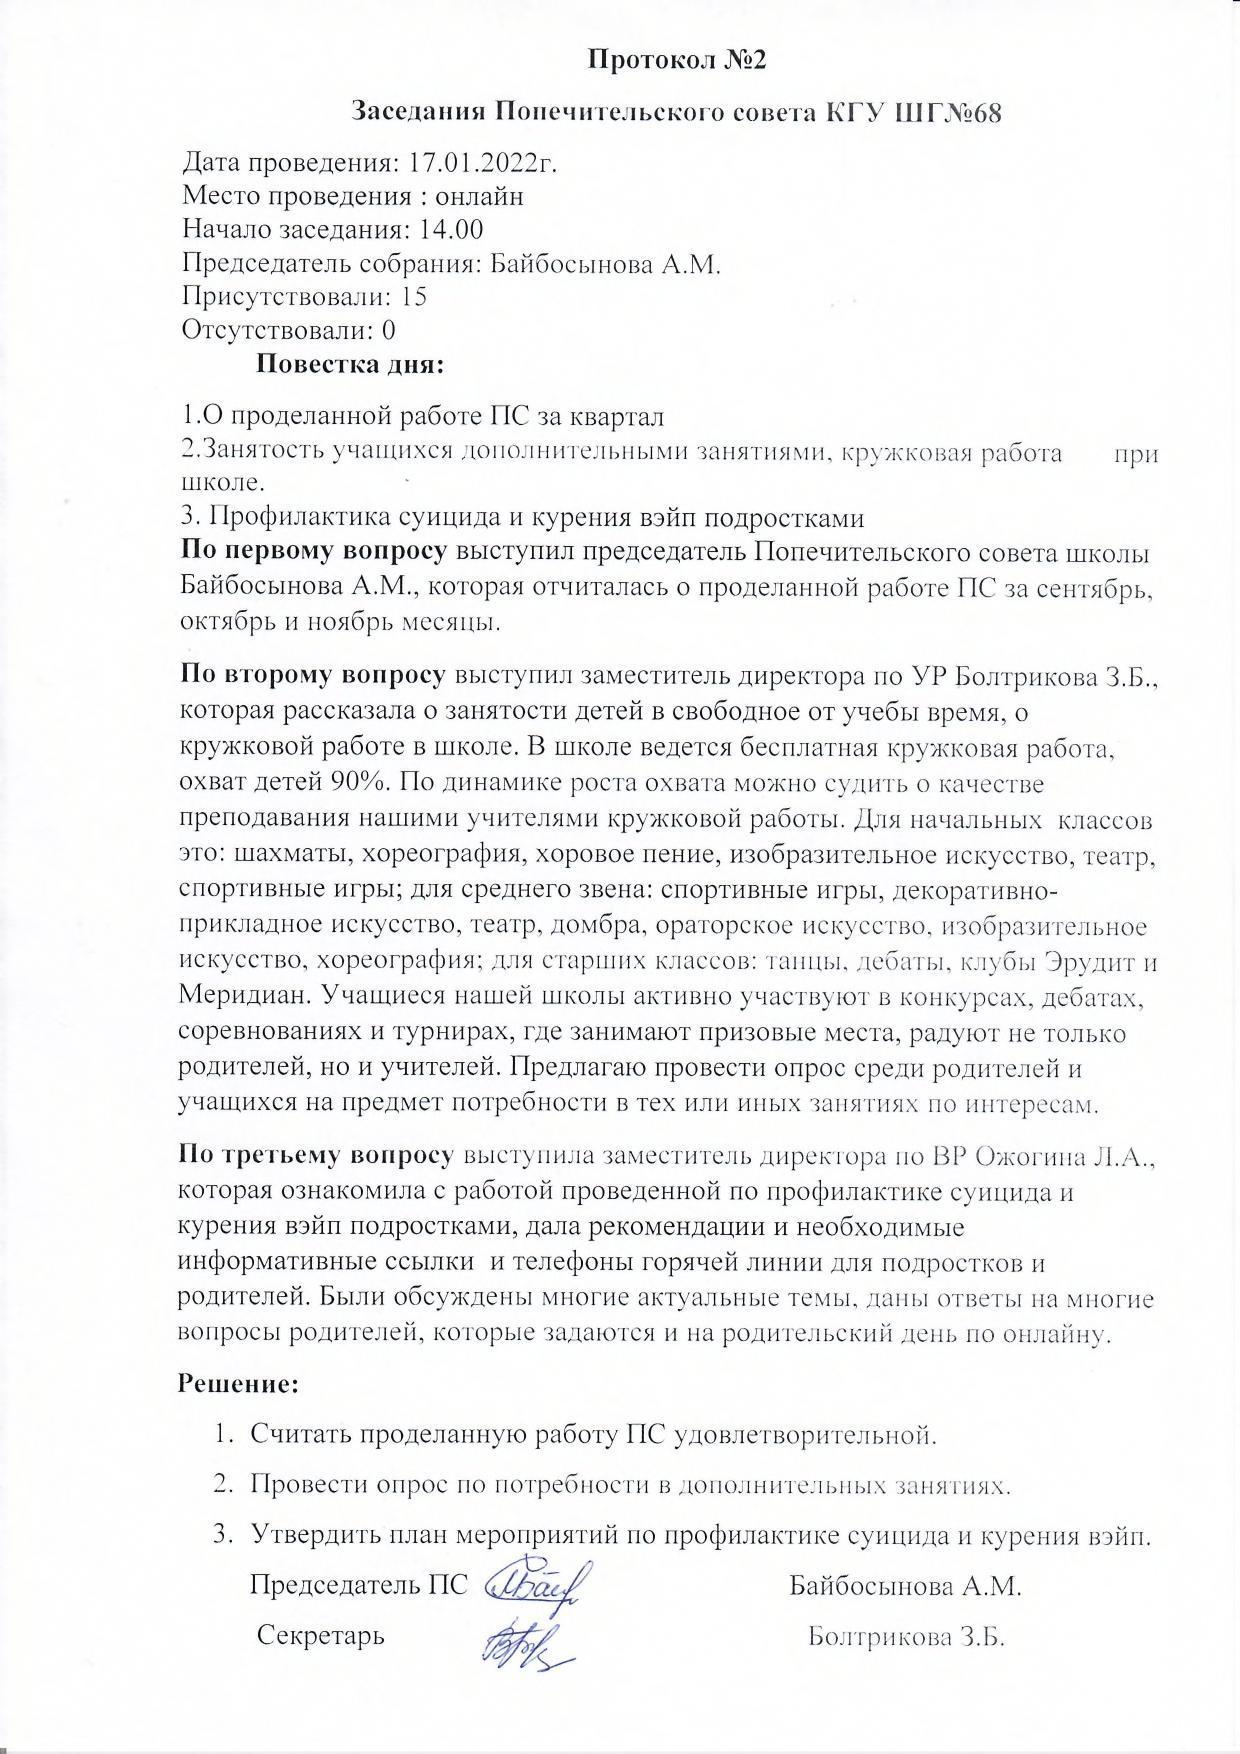 Протокол №2 заседания Попечительского совета от 17.01.2022